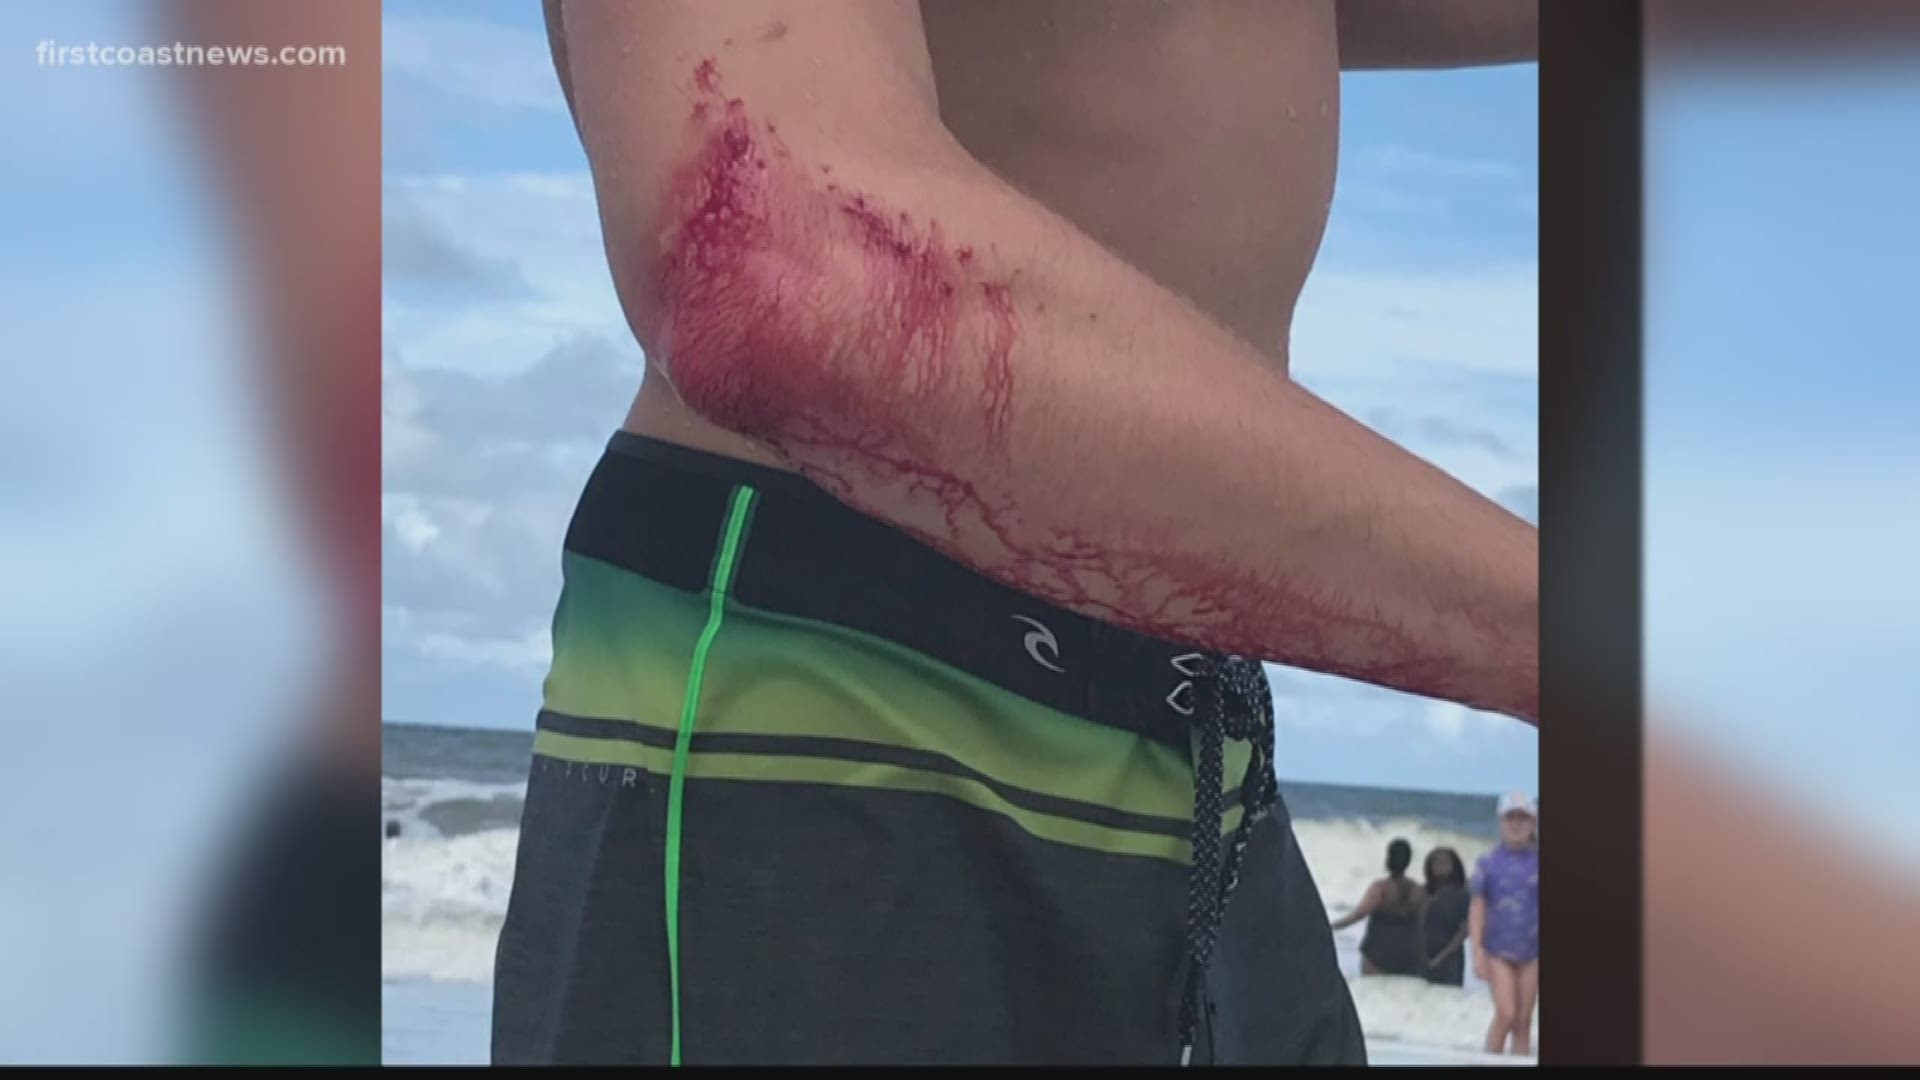 Jax Beach Surfer Not Afraid Of The Water After Shark Bite